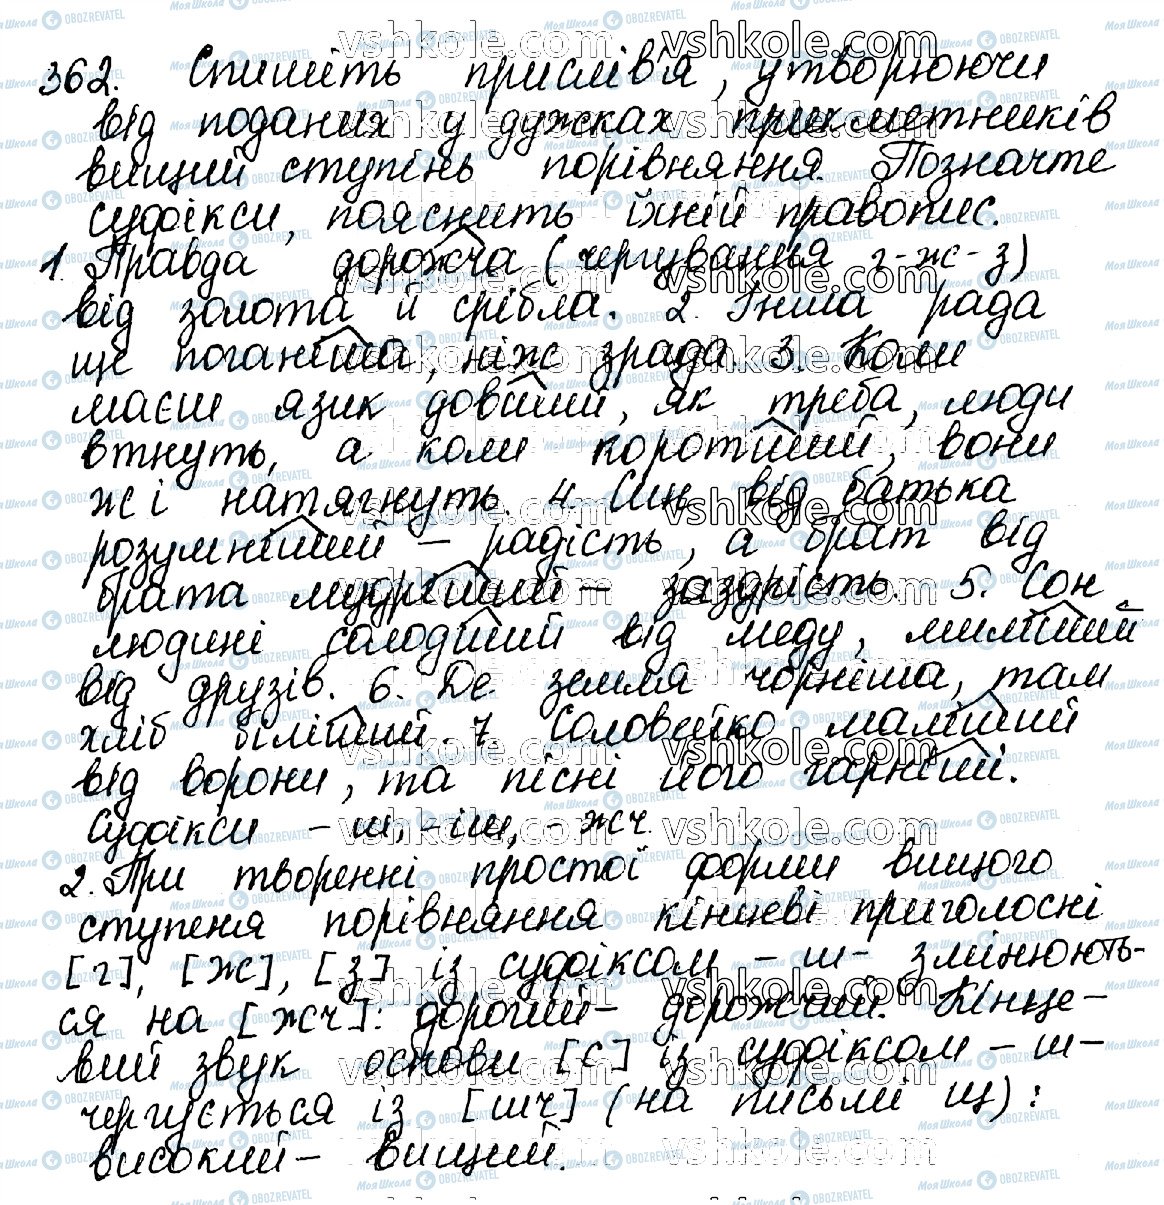 ГДЗ Українська мова 10 клас сторінка 362